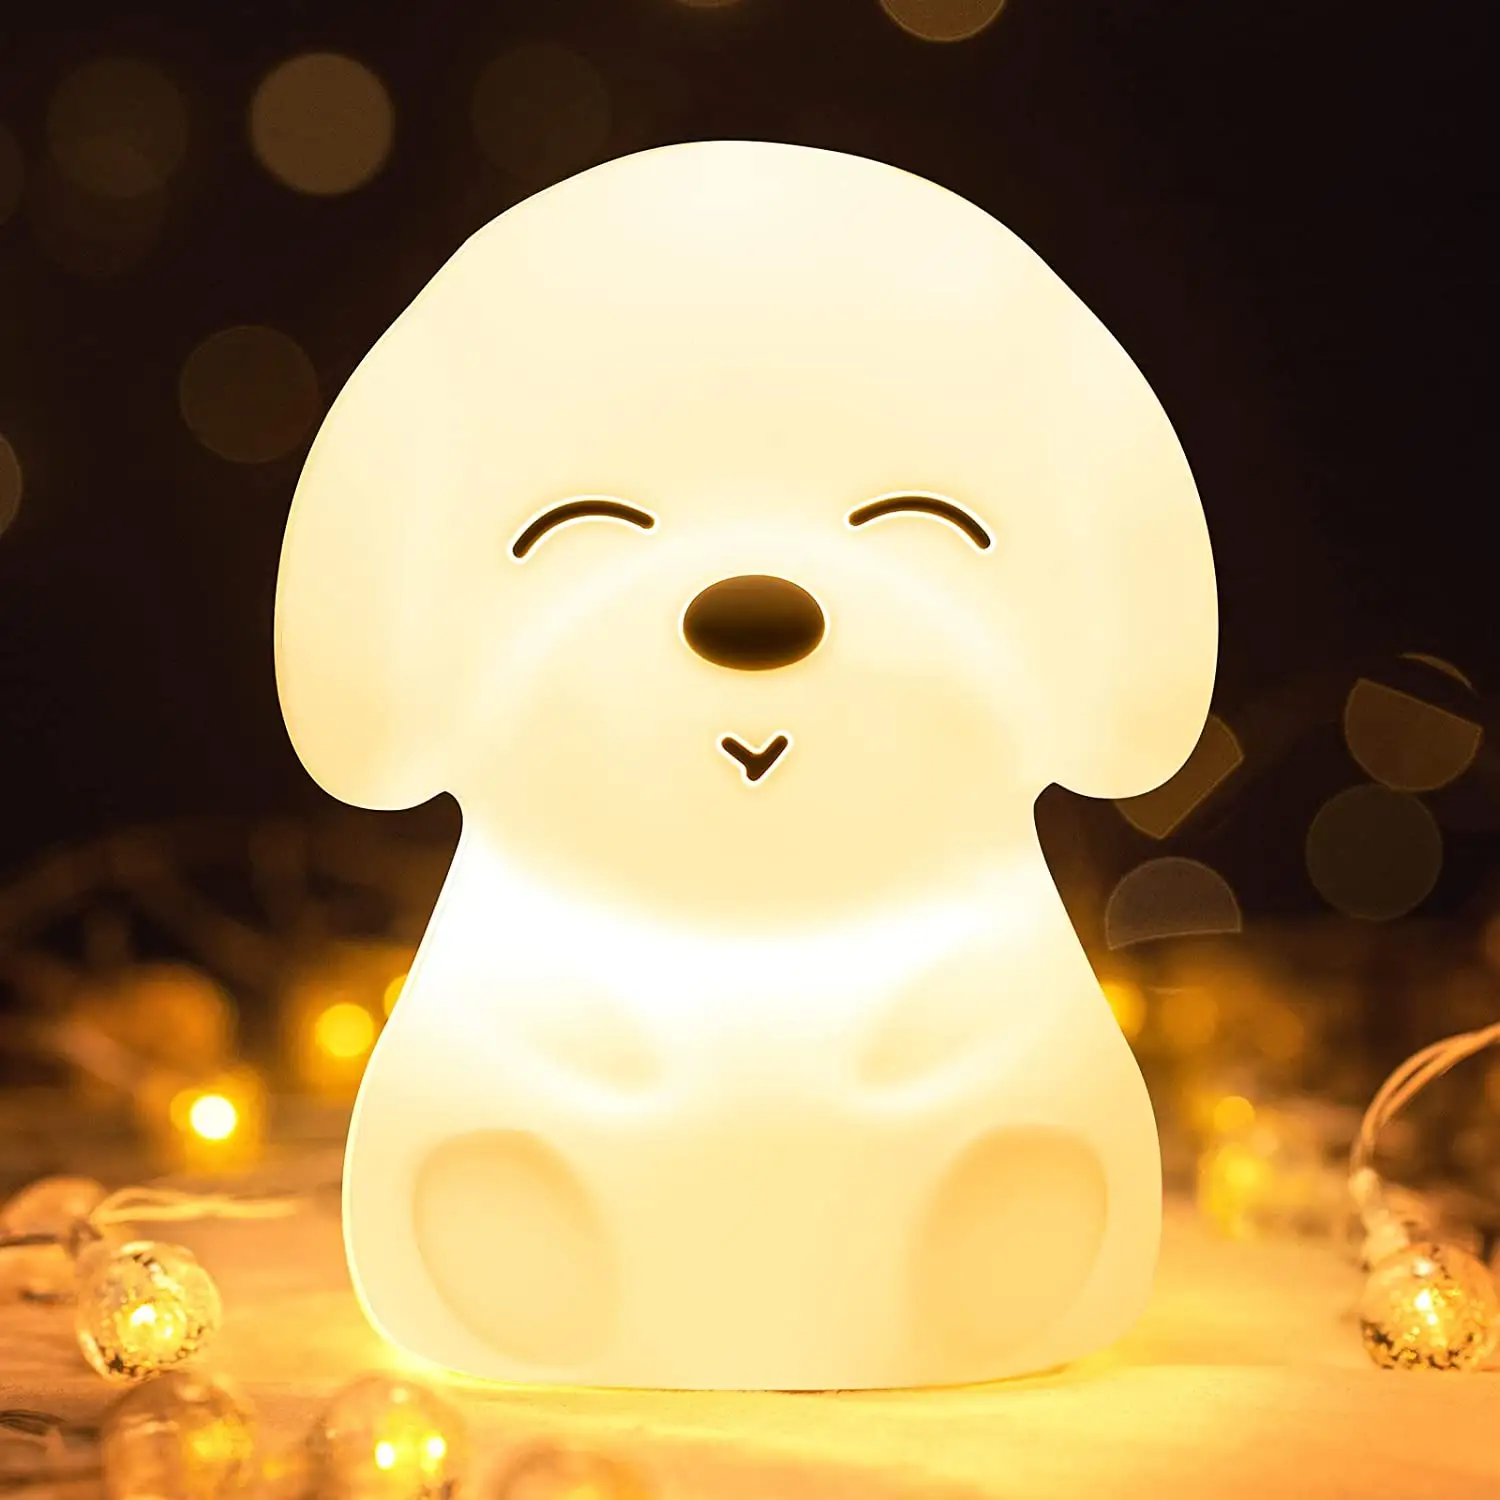 مصباح ليد على شكل كلب من السيليكون للإضاءة الليلية, مصباح ليد على شكل كلب من السيليكون للإضاءة الليلية ، مصباح ليد بشاحن يو إس بي ، مصباح للنوم يتميز بخافت كهربائي ملون باللون الأبيض